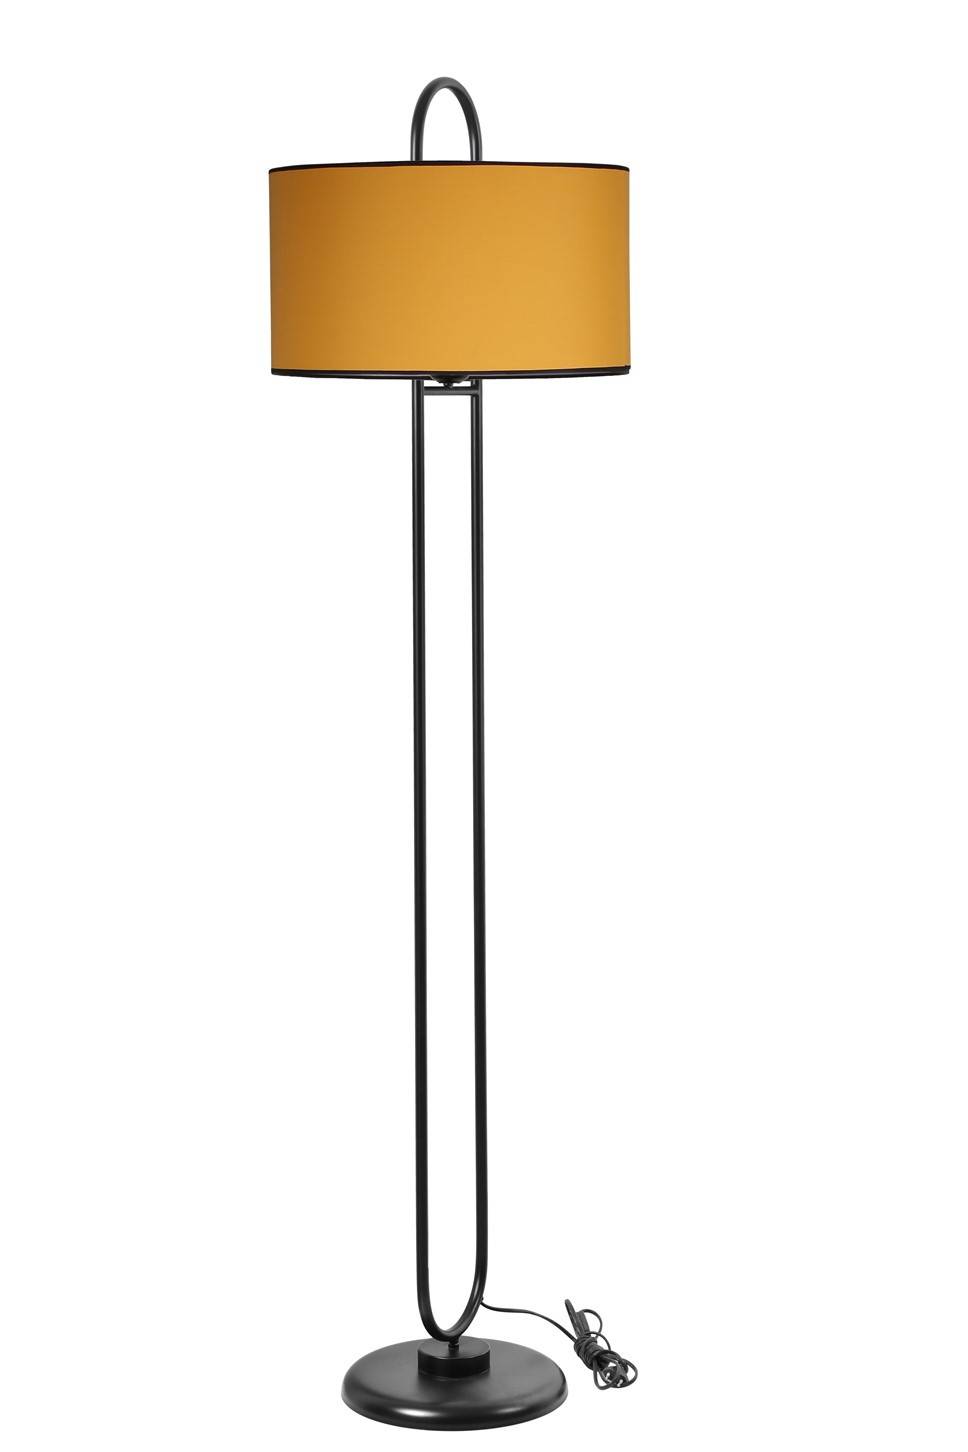 Ovalis elliptische Stehleuchte 170cm Stoff Gelb und Metall Schwarz